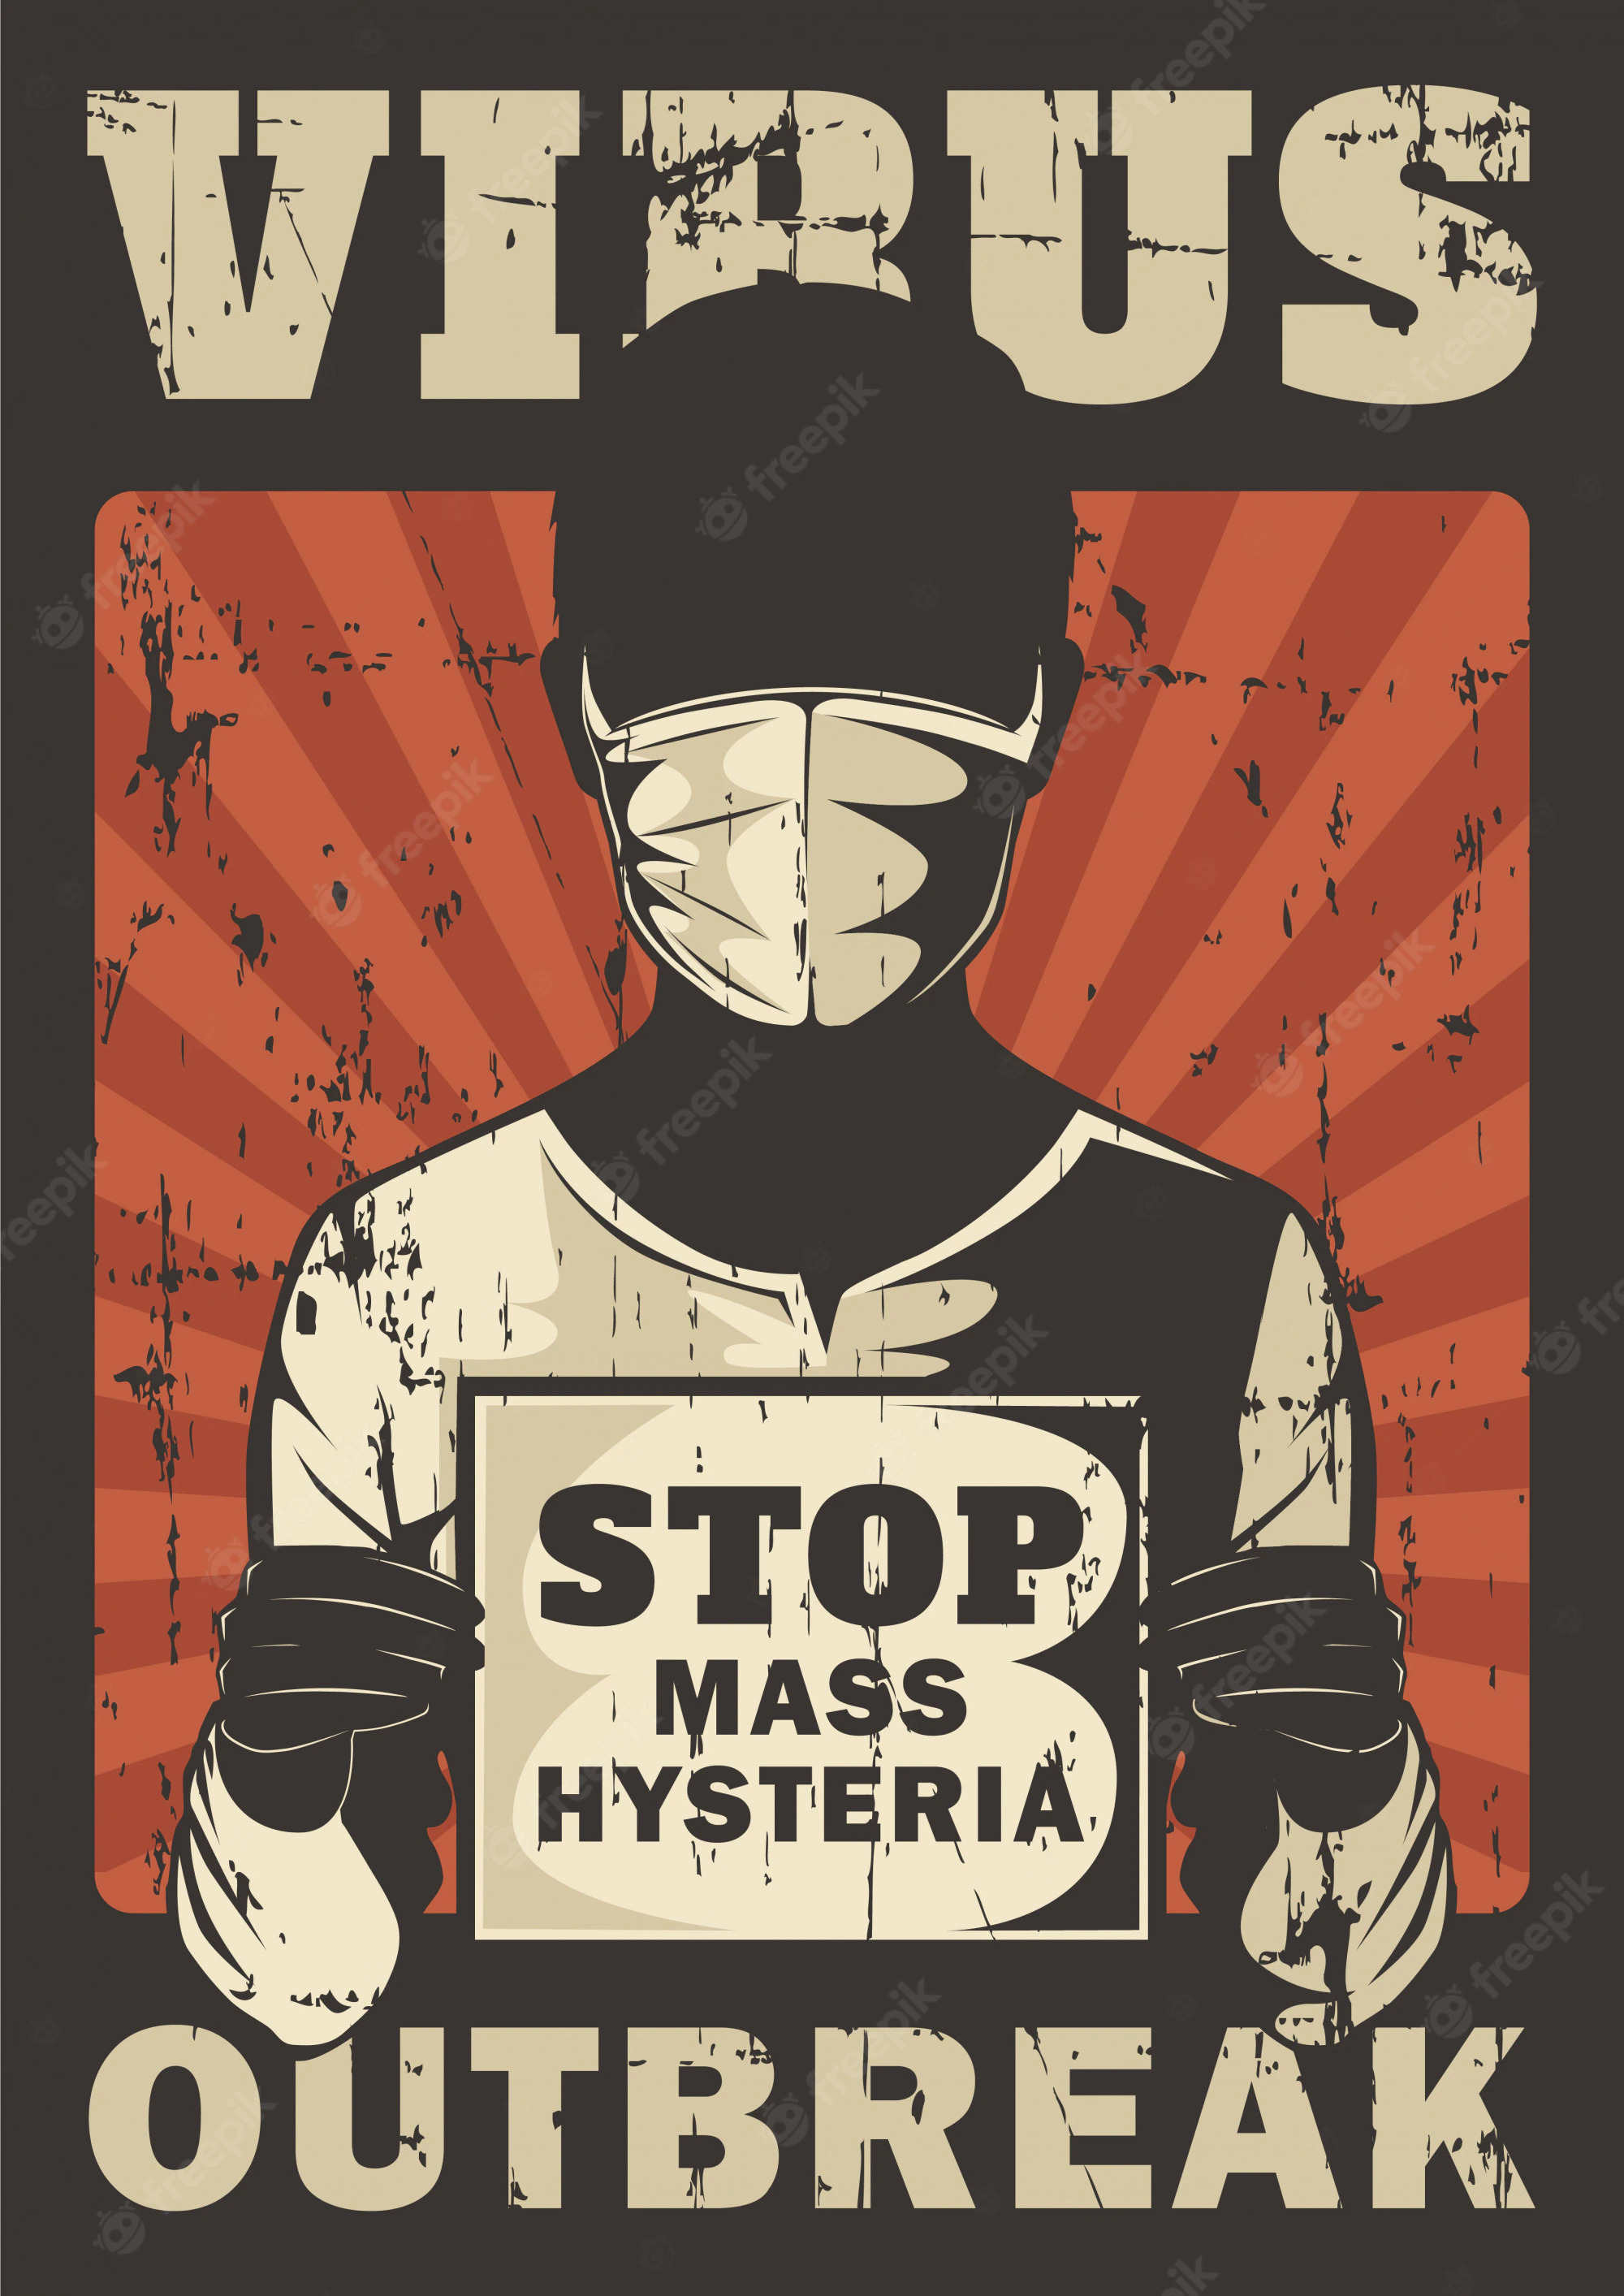 stop-mass-hysteria-corona-virus-covid-19-outbreak-propaganda-signage-poster-retro-rustic-vector_2699-393.jpg